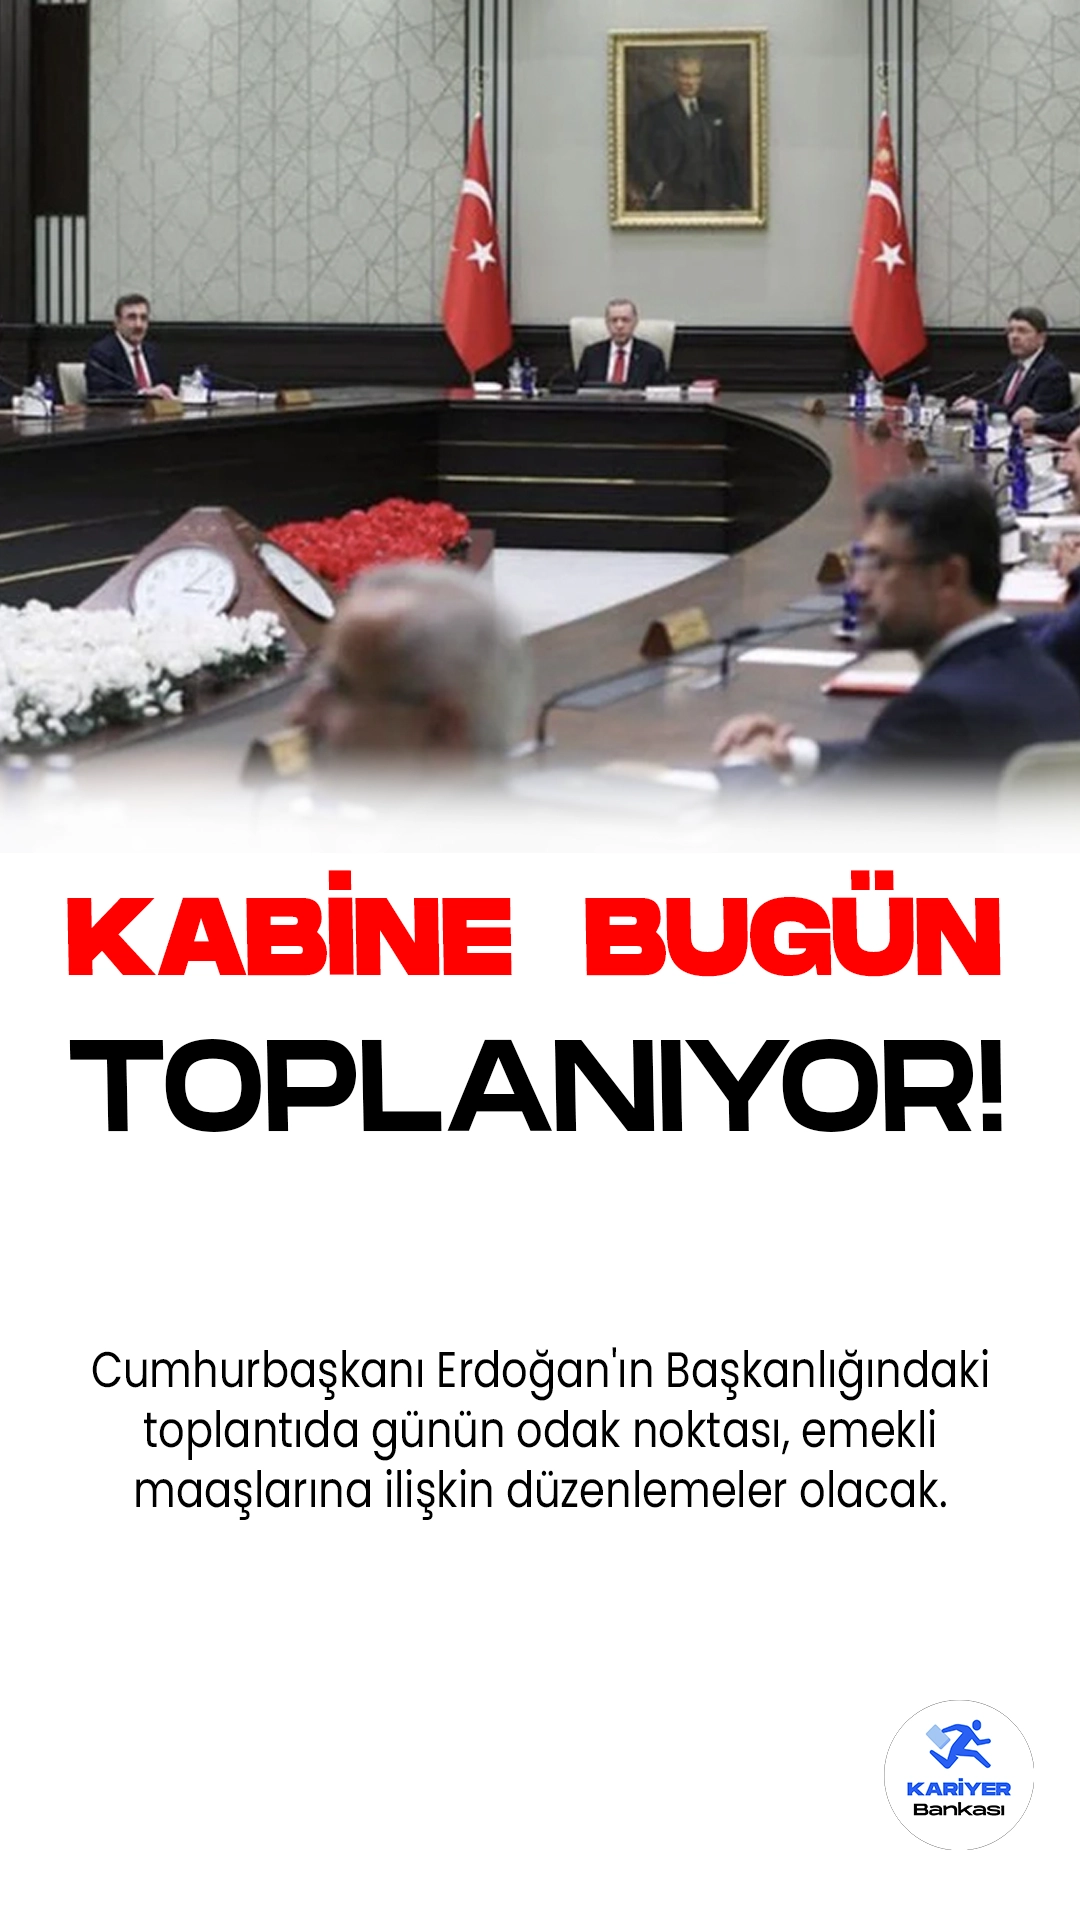 Cumhurbaşkanlığı Kabinesi Bugün Beştepe'de Toplanıyor.Bugün Beştepe'de toplanacak olan Cumhurbaşkanlığı Kabinesi, Türkiye'nin önemli gündem maddelerini masaya yatıracak. Cumhurbaşkanı Erdoğan'ın Başkanlığındaki toplantıda günün odak noktası, emekli maaşlarına ilişkin düzenlemeler olacak.